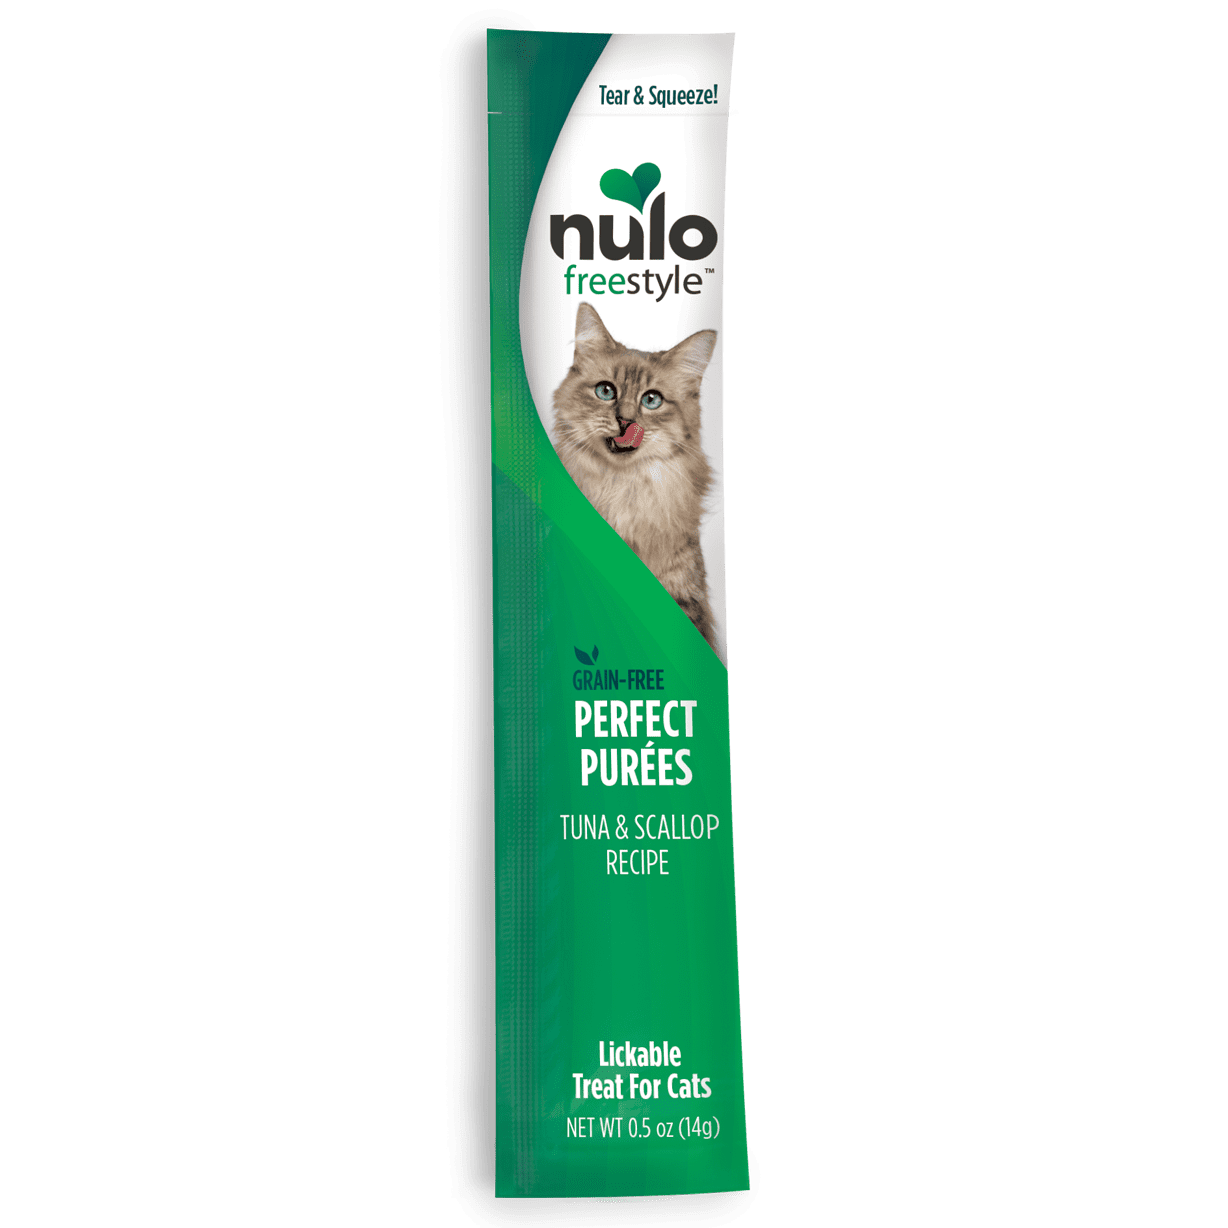 Nulo Freestyle Tuna & Scallop Recipe Grain-Free Perfect Puree Cat & Kitten treat,5oz